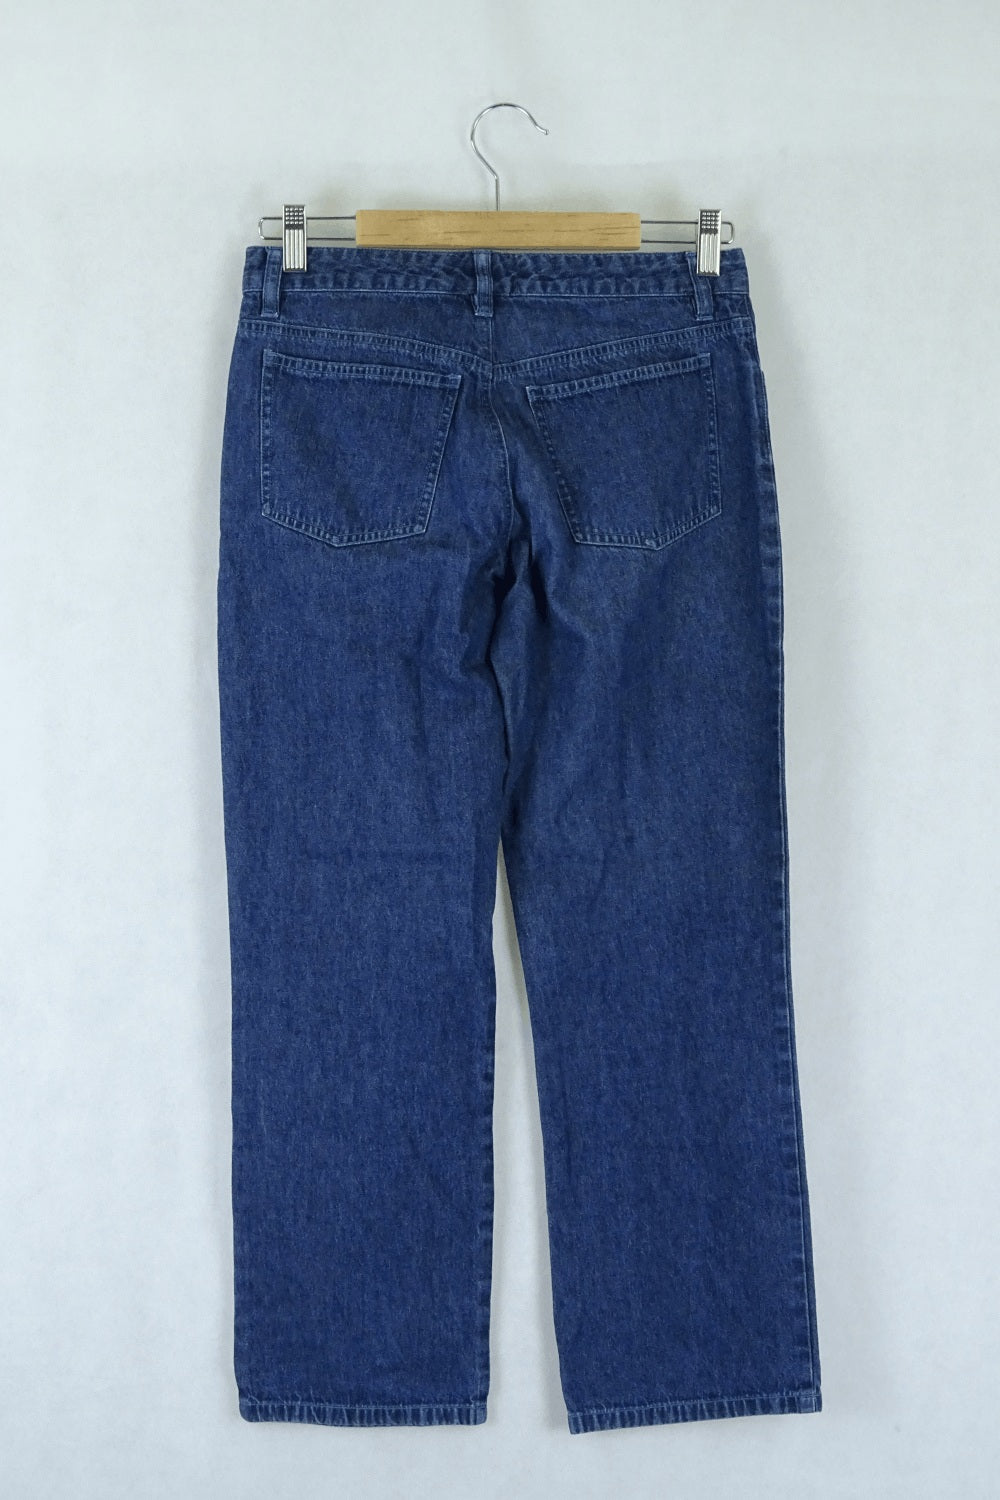 Armani Exchange Blue Jeans 2 (AU6)